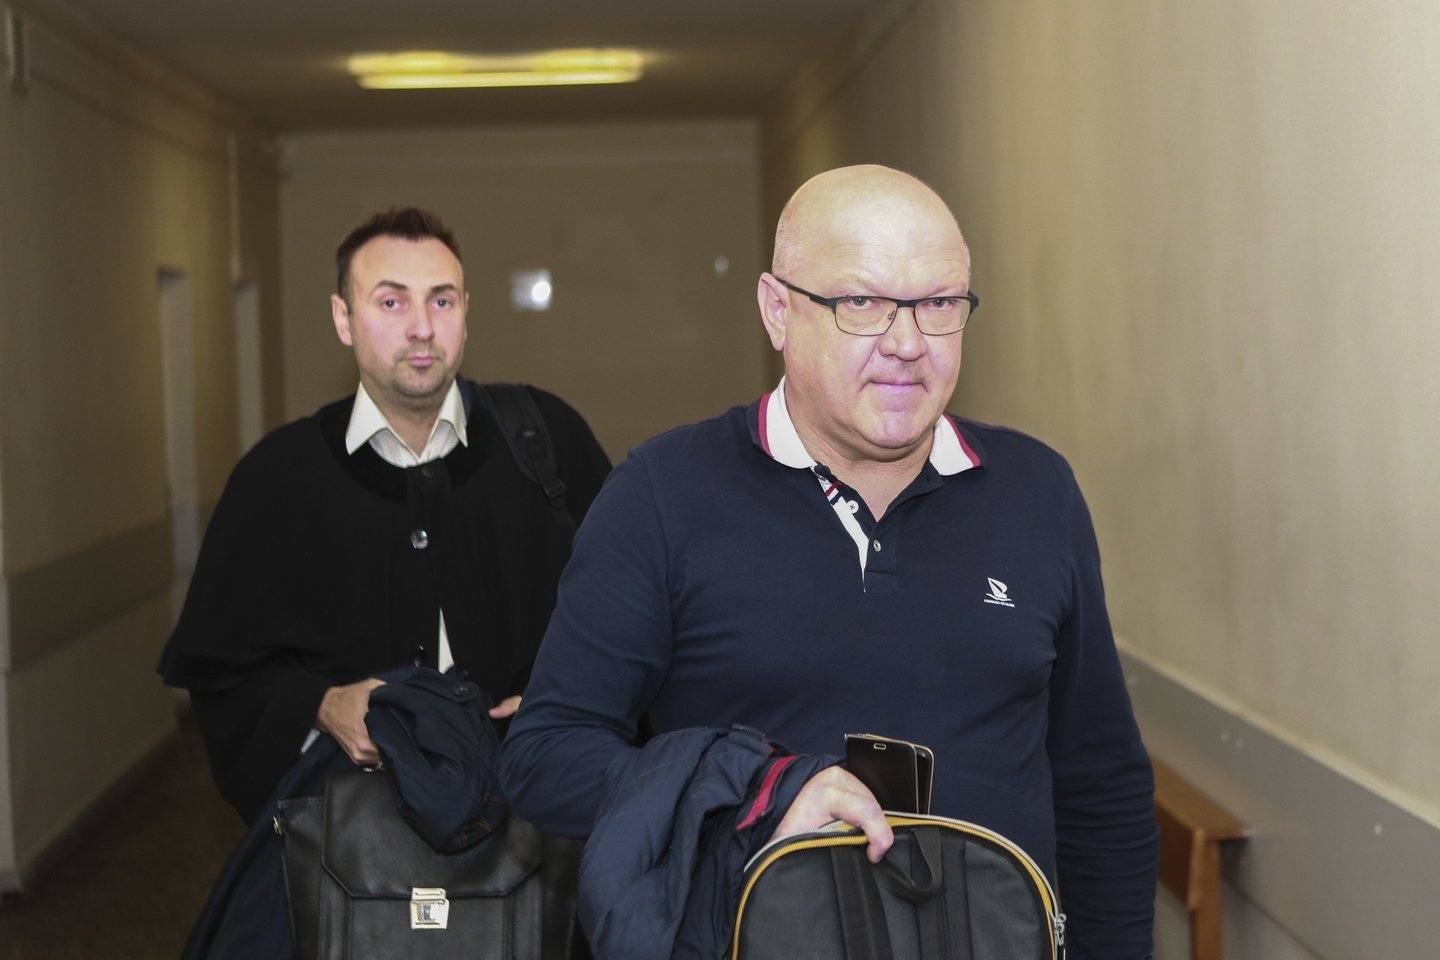  Kauno gydytojas Ž.Saladžinskas (nuotr. dešinėje) apskundė nuosprendį byloje dėl pacientės mirties, prašydamas jį išteisinti.<br> G.Bitvinsko nuotr.